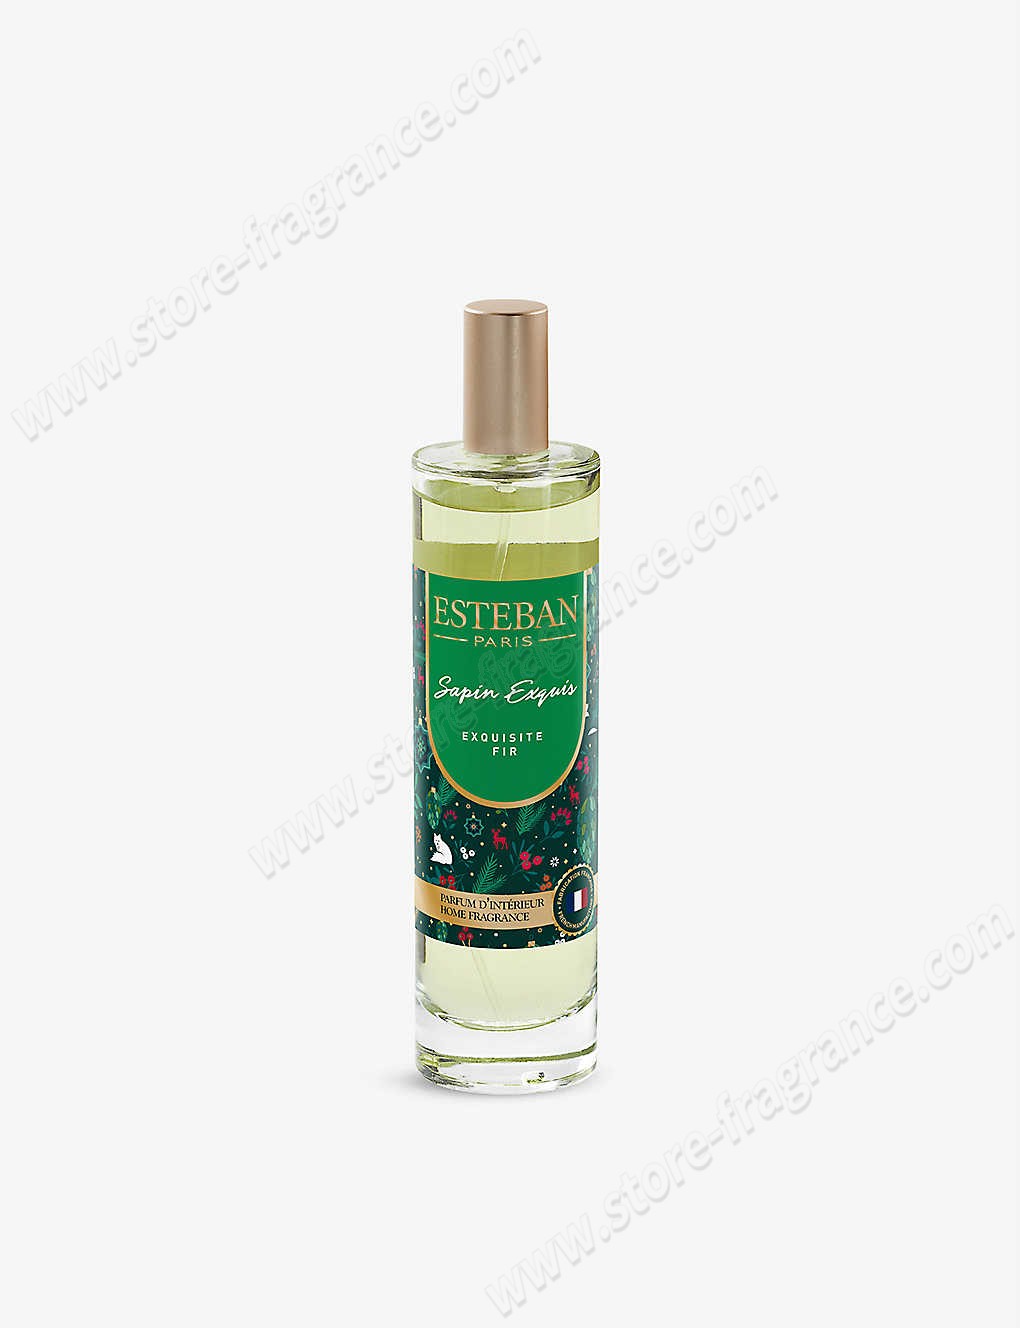 ESTEBAN/Exquisite Fir room spray 50ml Limit Offer - -0